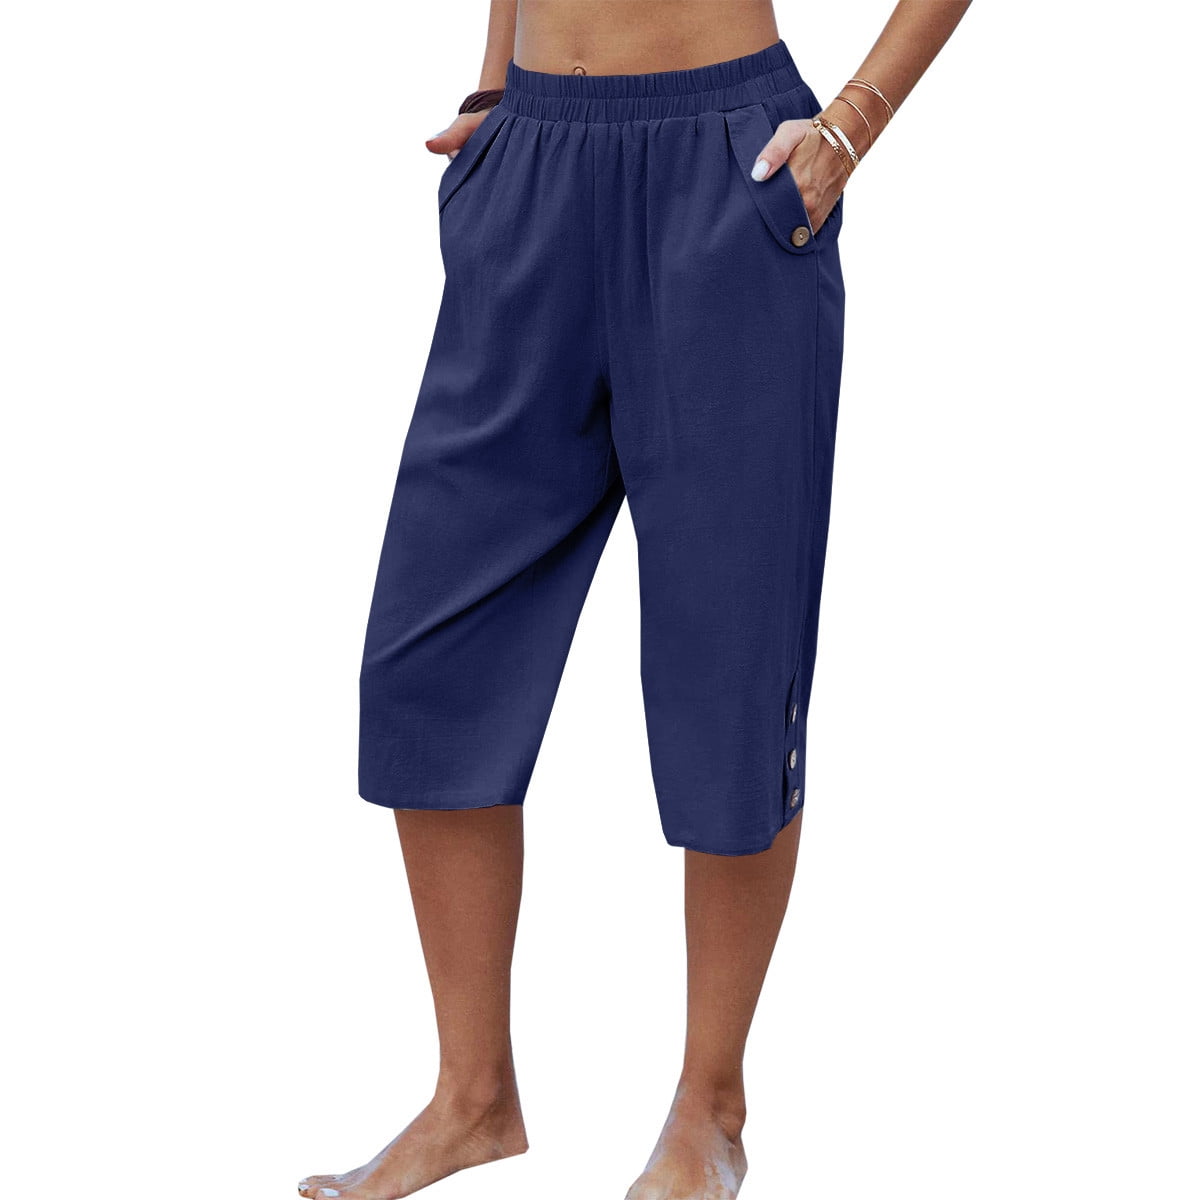 Dellytop Womens Casual Elastic Waist Solid Color 3/4 Summer Capri Pants ...